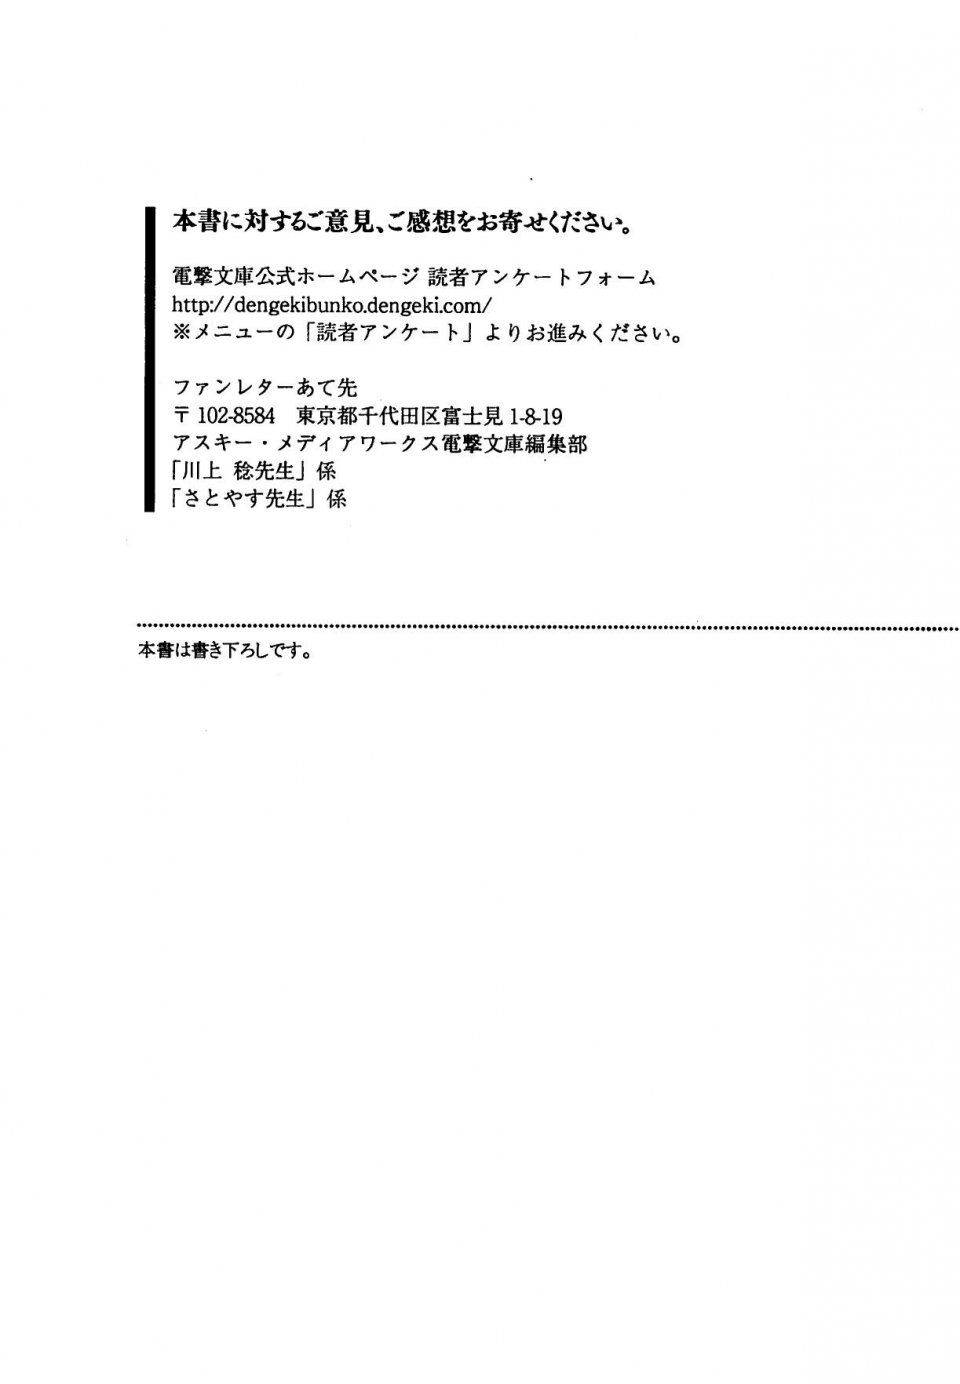 Kyoukai Senjou no Horizon LN Vol 19(8A) - Photo #742